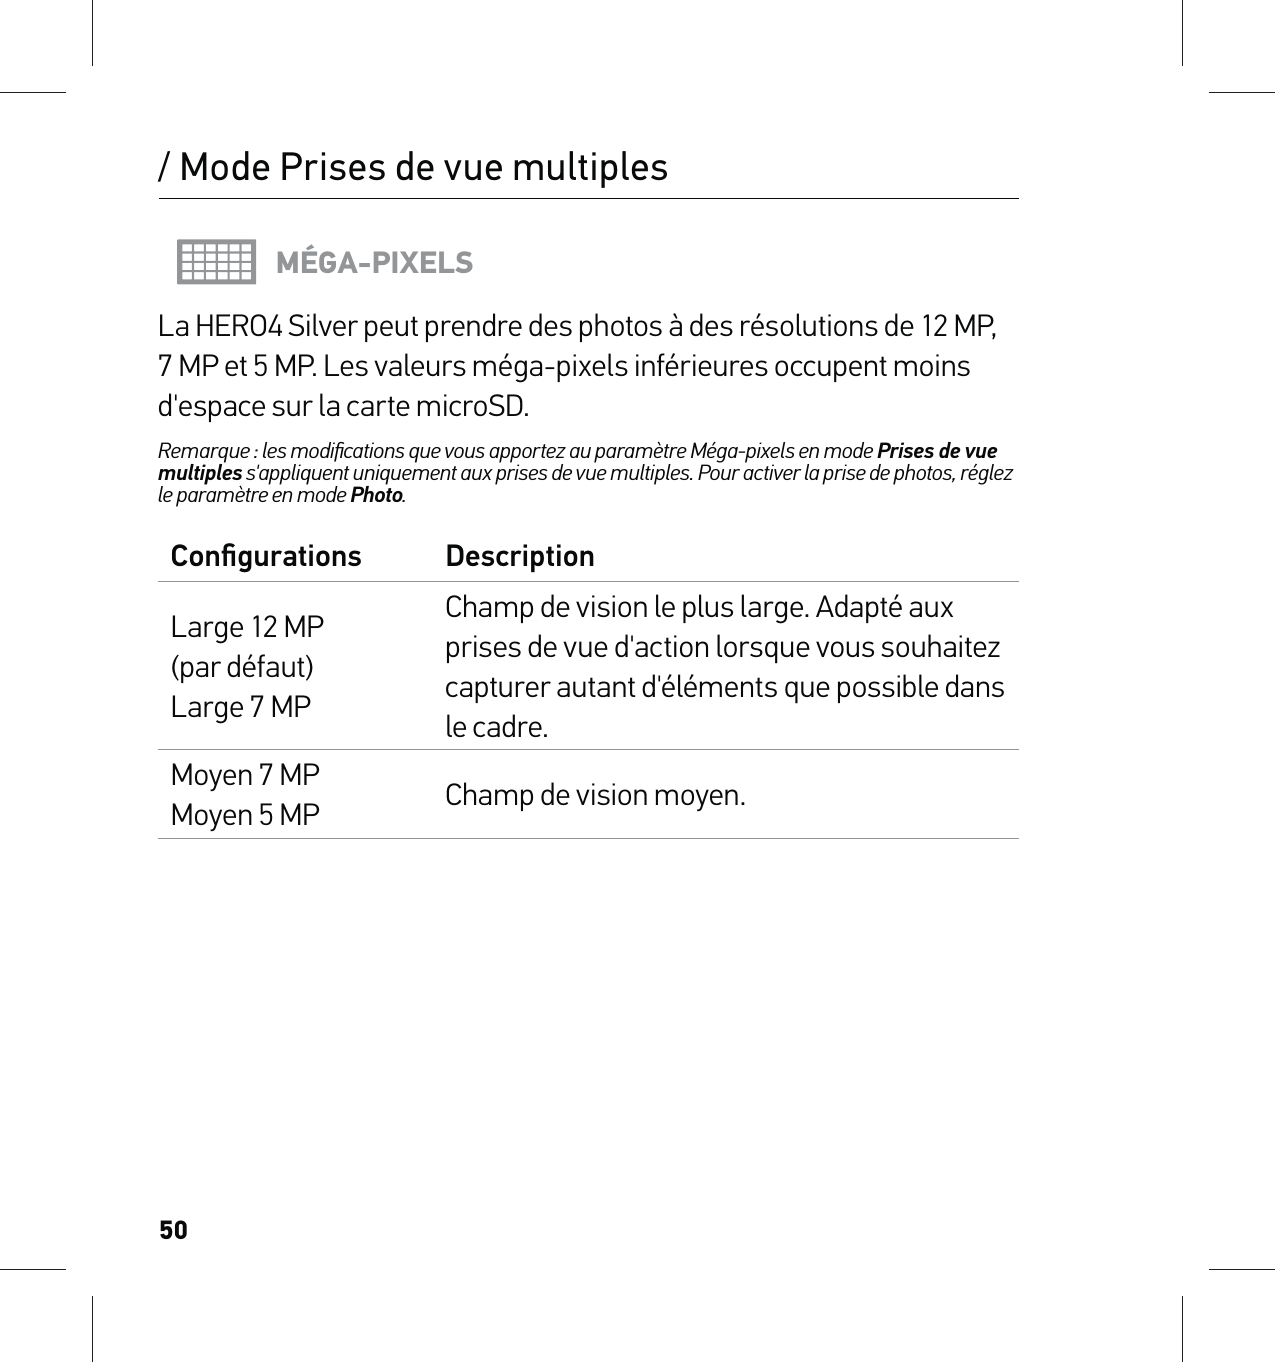 50/ Mode Prises de vue multiplesMÉGA-PIXELSLa HERO4 Silver peut prendre des photos à des résolutions de 12 MP, 7 MP et 5 MP. Les valeurs méga-pixels inférieures occupent moins d&apos;espace sur la carte microSD.Remarque : les modiﬁcations que vous apportez au paramètre Méga-pixels en mode Prises de vue multiples s&apos;appliquent uniquement aux prises de vue multiples. Pour activer la prise de photos, réglez le paramètre en mode Photo.Conﬁgurations DescriptionLarge 12 MP  (par défaut) Large 7 MPChamp de vision le plus large. Adapté aux prises de vue d&apos;action lorsque vous souhaitez capturer autant d&apos;éléments que possible dans le cadre.Moyen 7 MP Moyen 5 MP Champ de vision moyen.